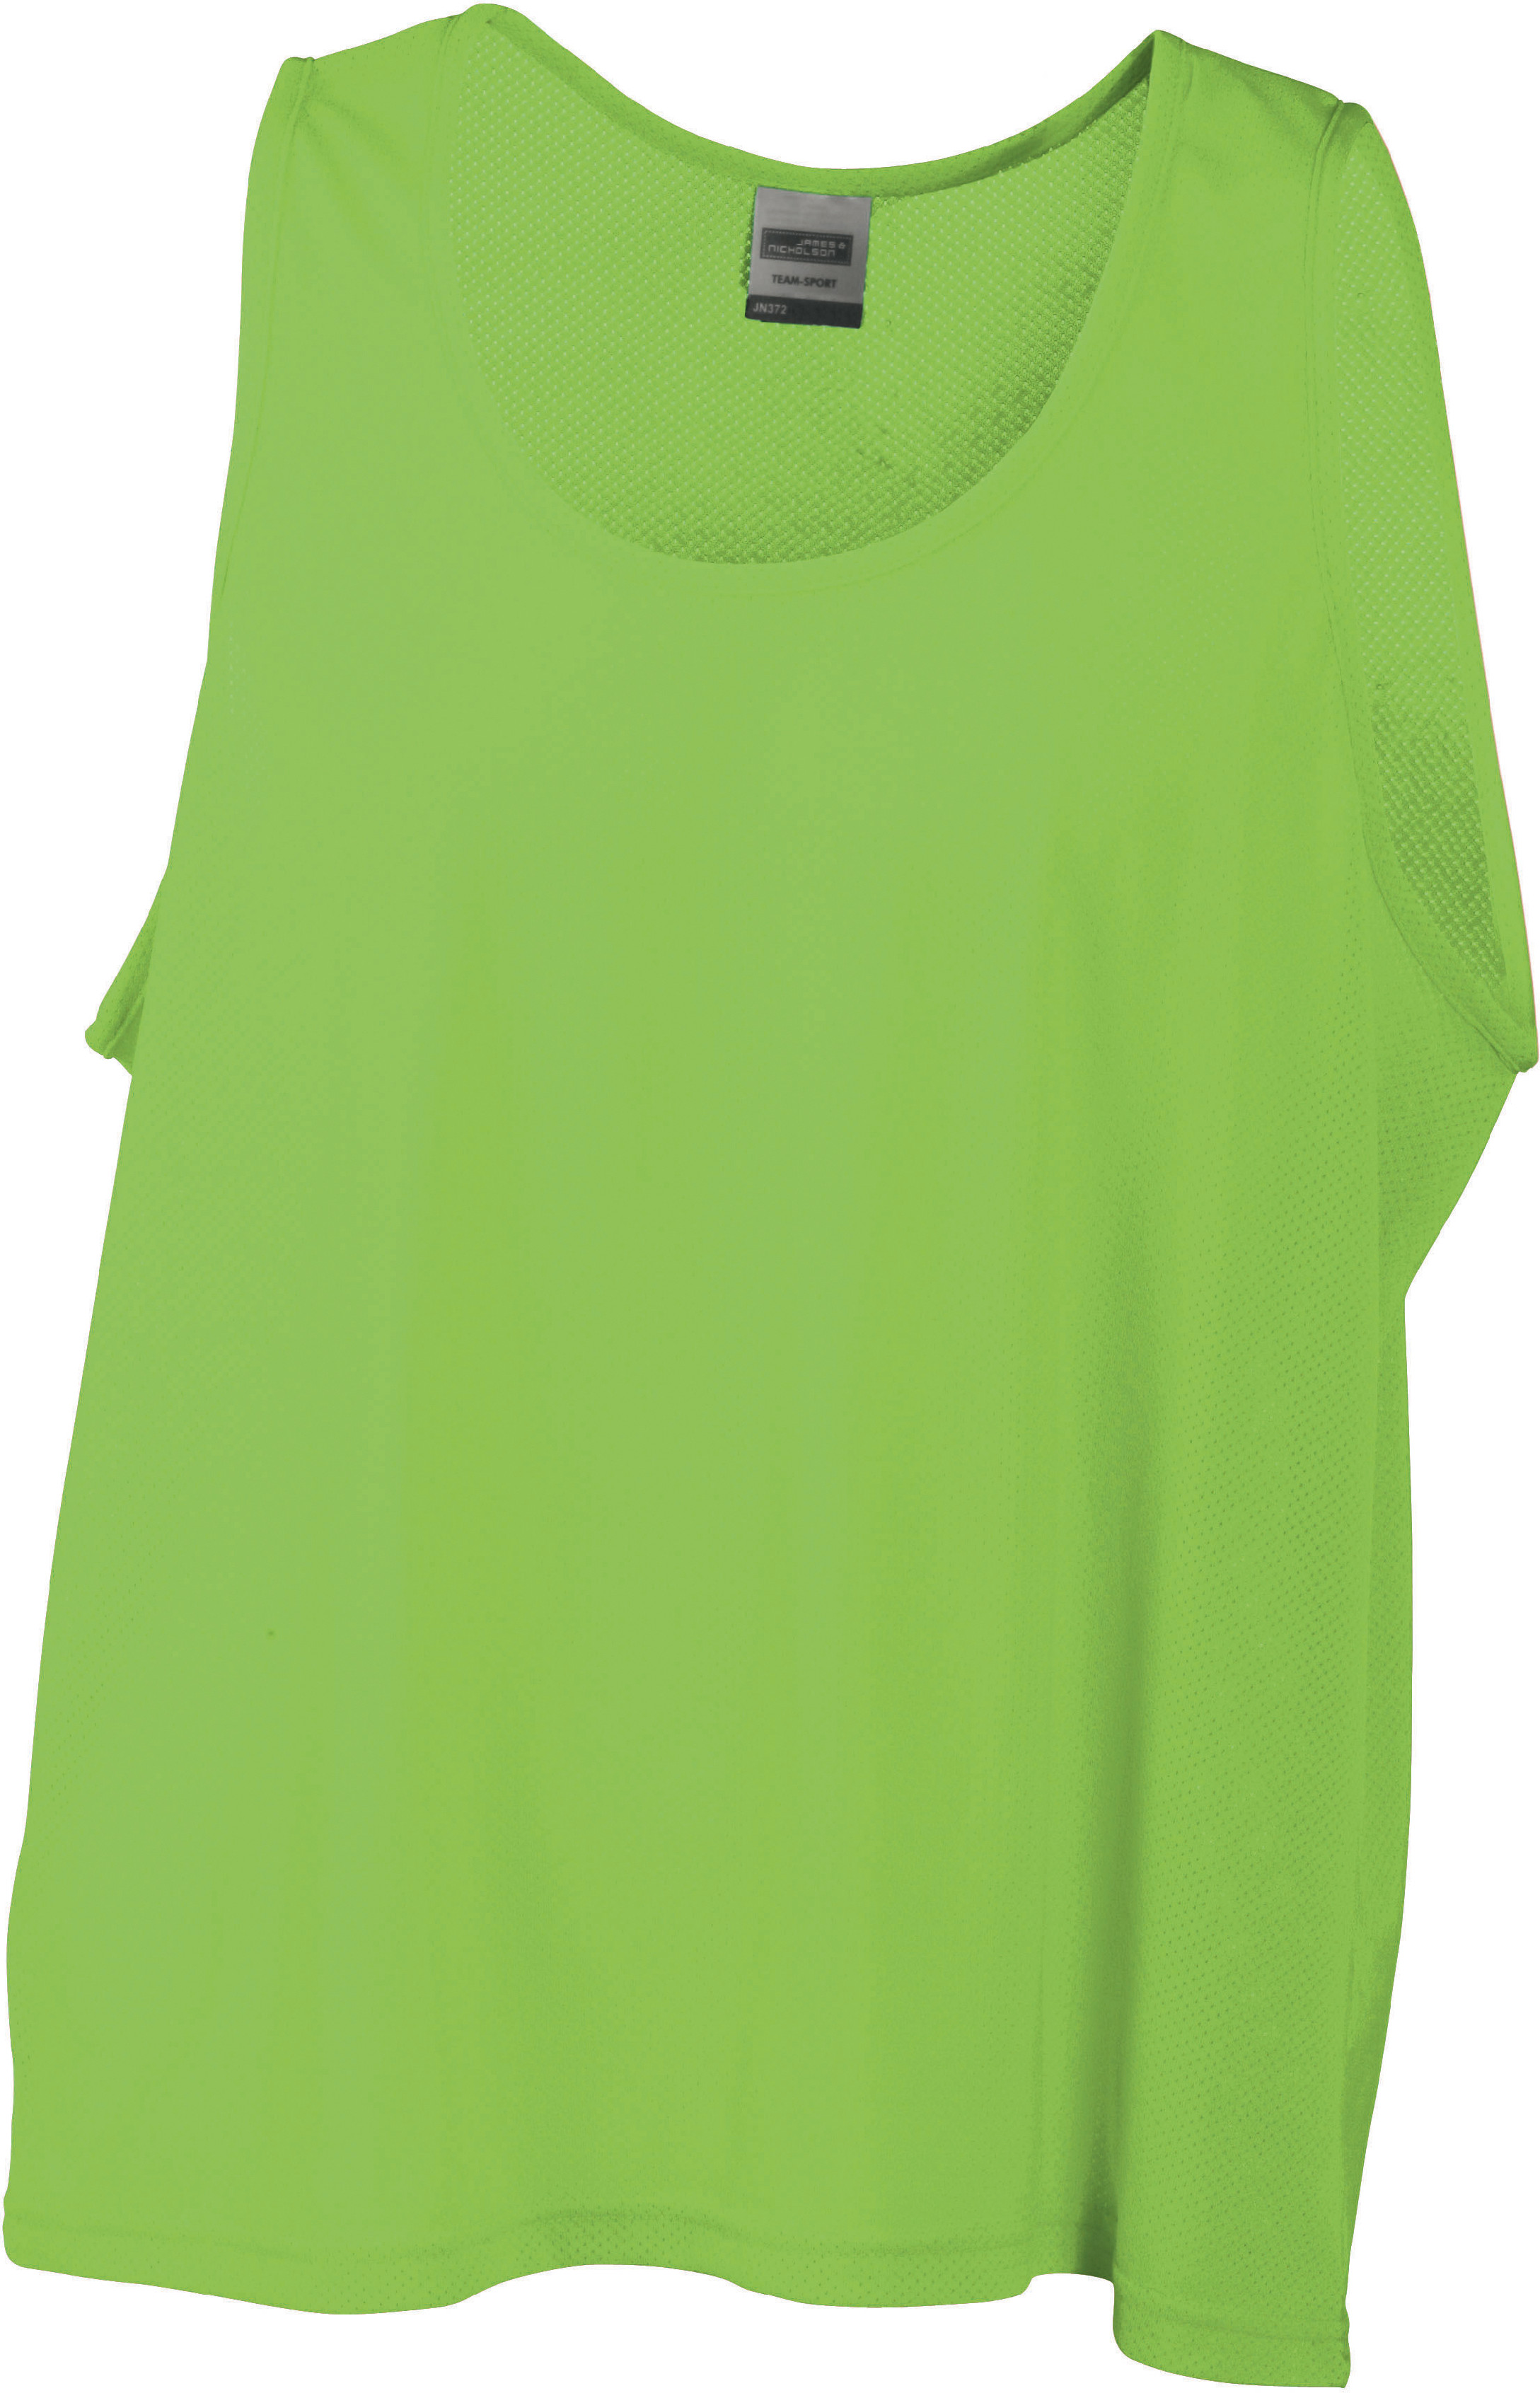 Týmový rozlišovací dres JN 372 Barva: středně zelená, Velikost: S